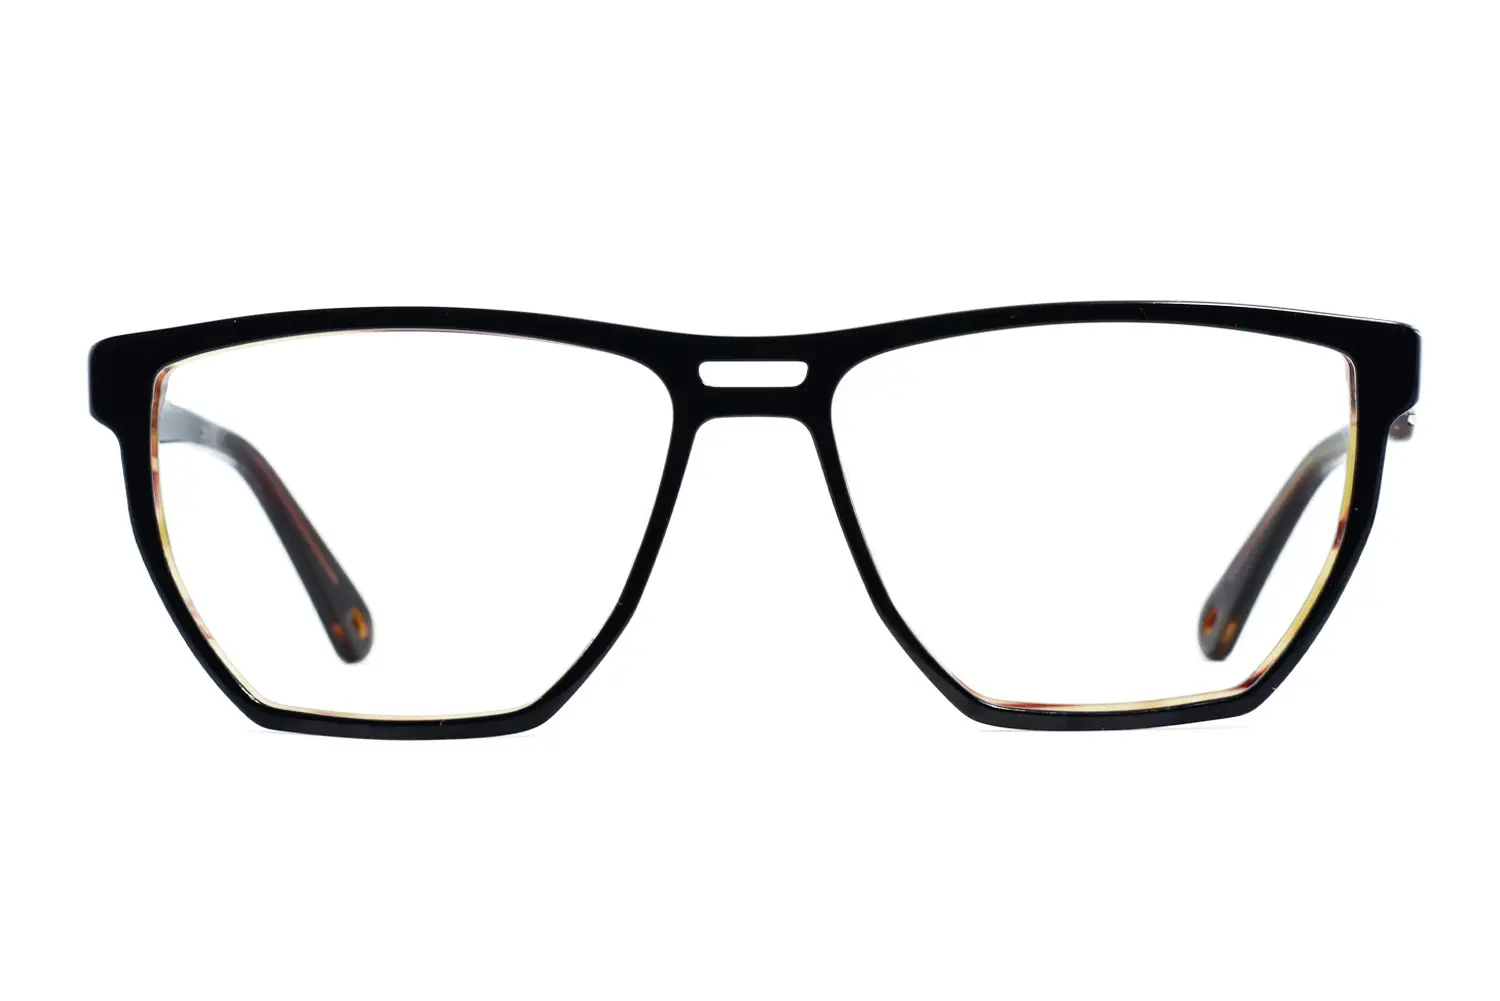 عینک طبیHECTOR&BJORN مدلBERG C1 سایز xlareg - دکترعینک